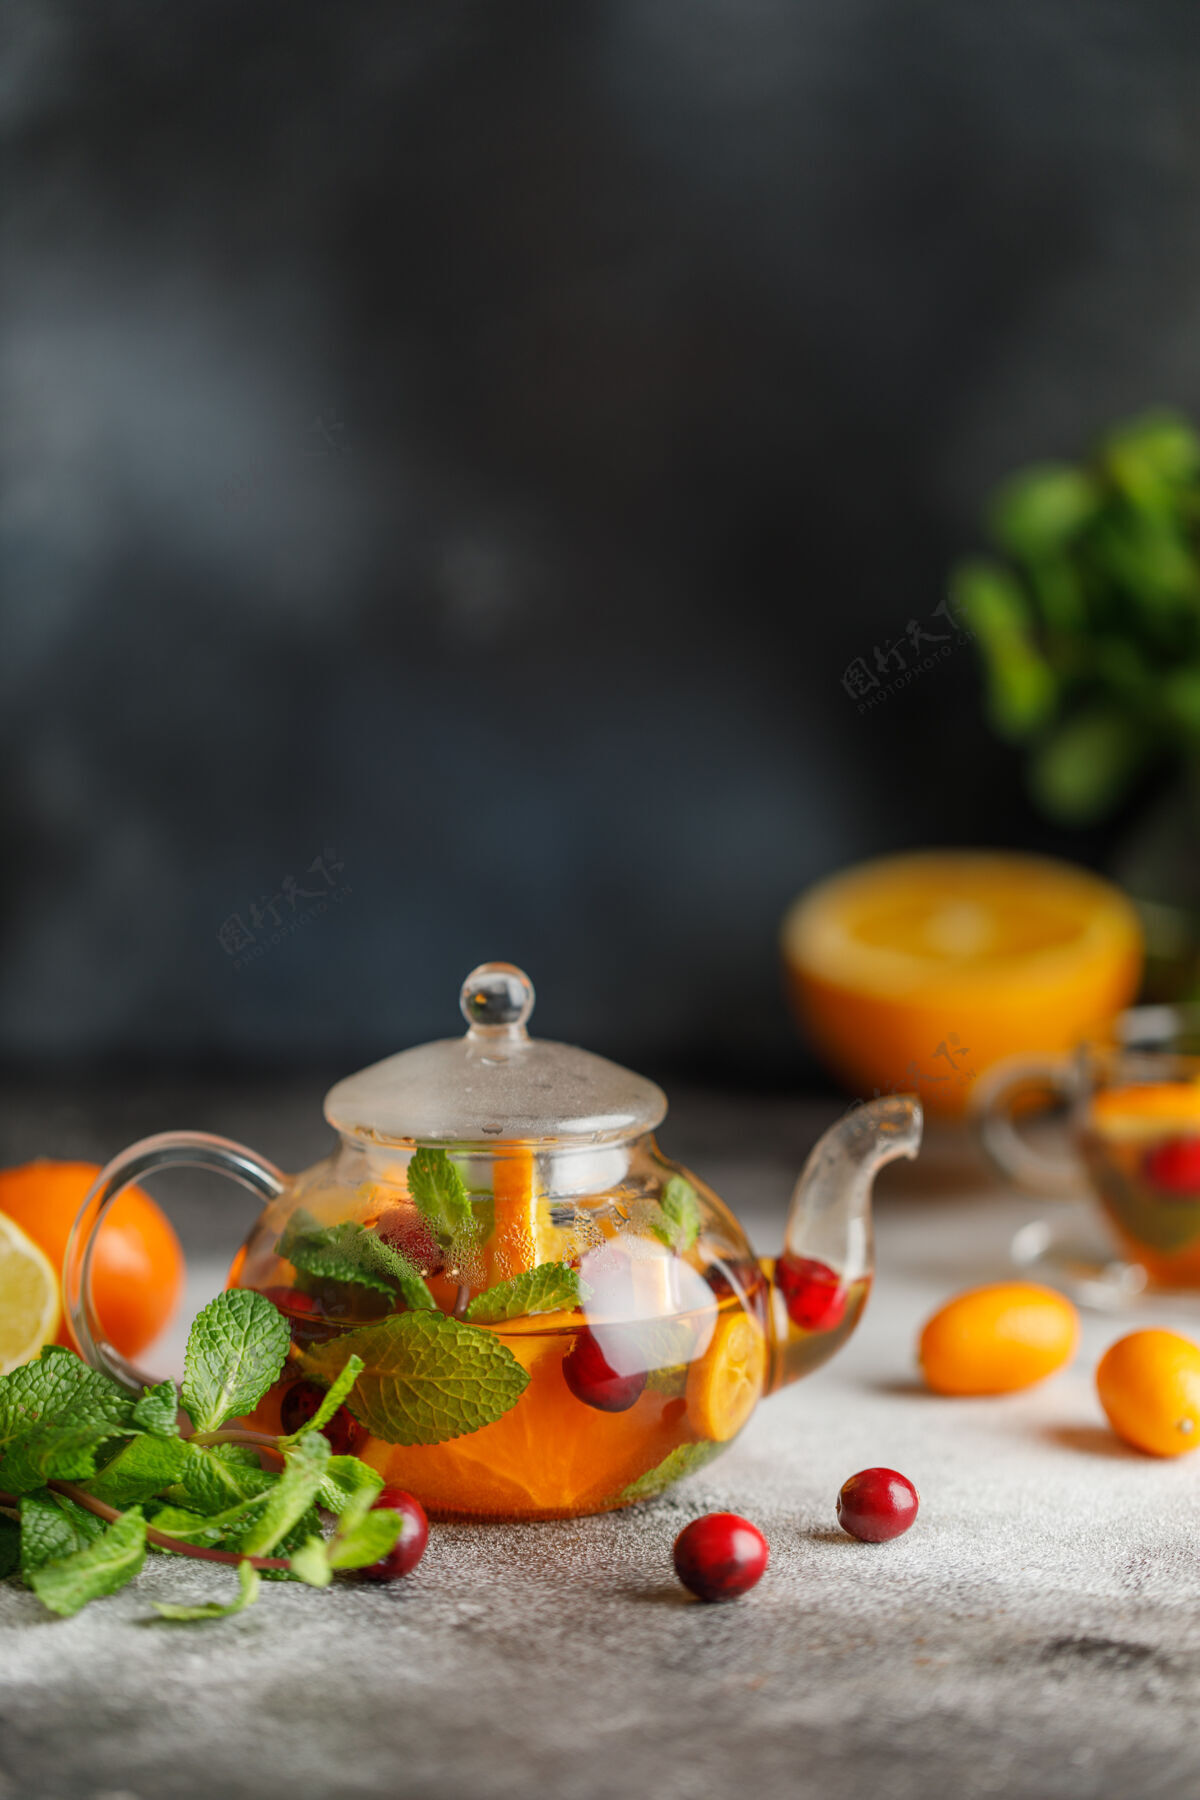 桑格里亚水果茶配薄荷 橙子和红莓 背景为深色石头一杯热茶鸡尾酒香气健康的